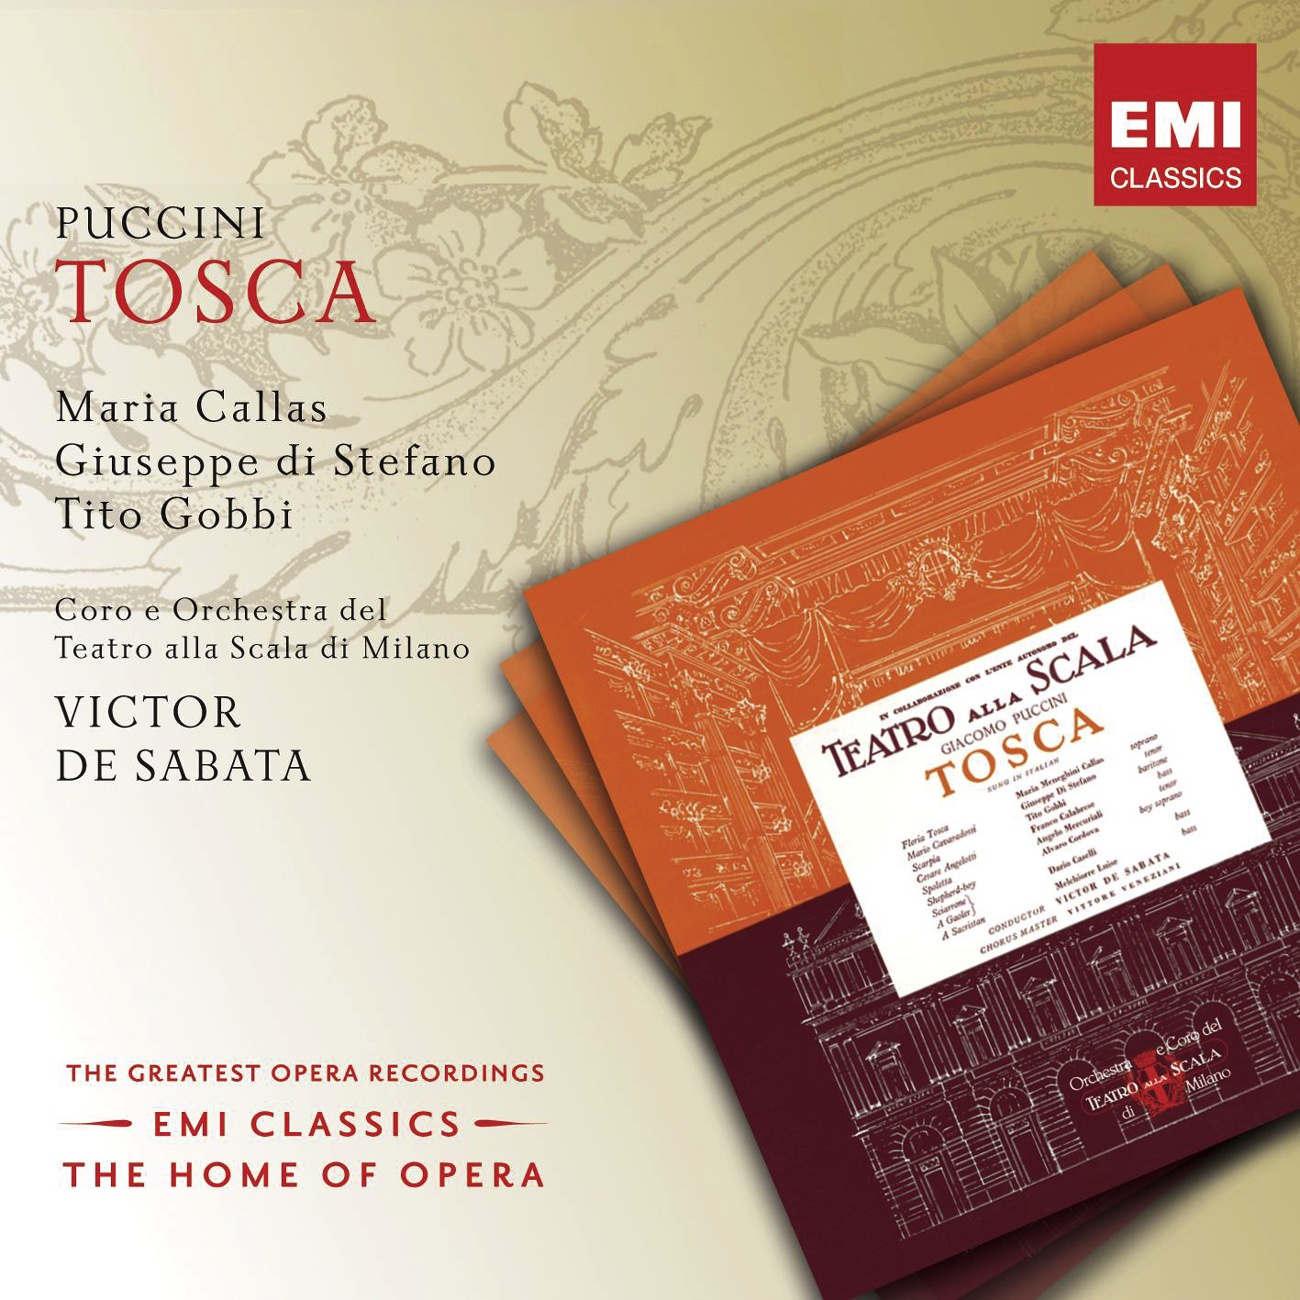 Tosca (2002 Digital Remaster), ACT ONE: Mia gelosa! (Tosca/Cavaradossi)